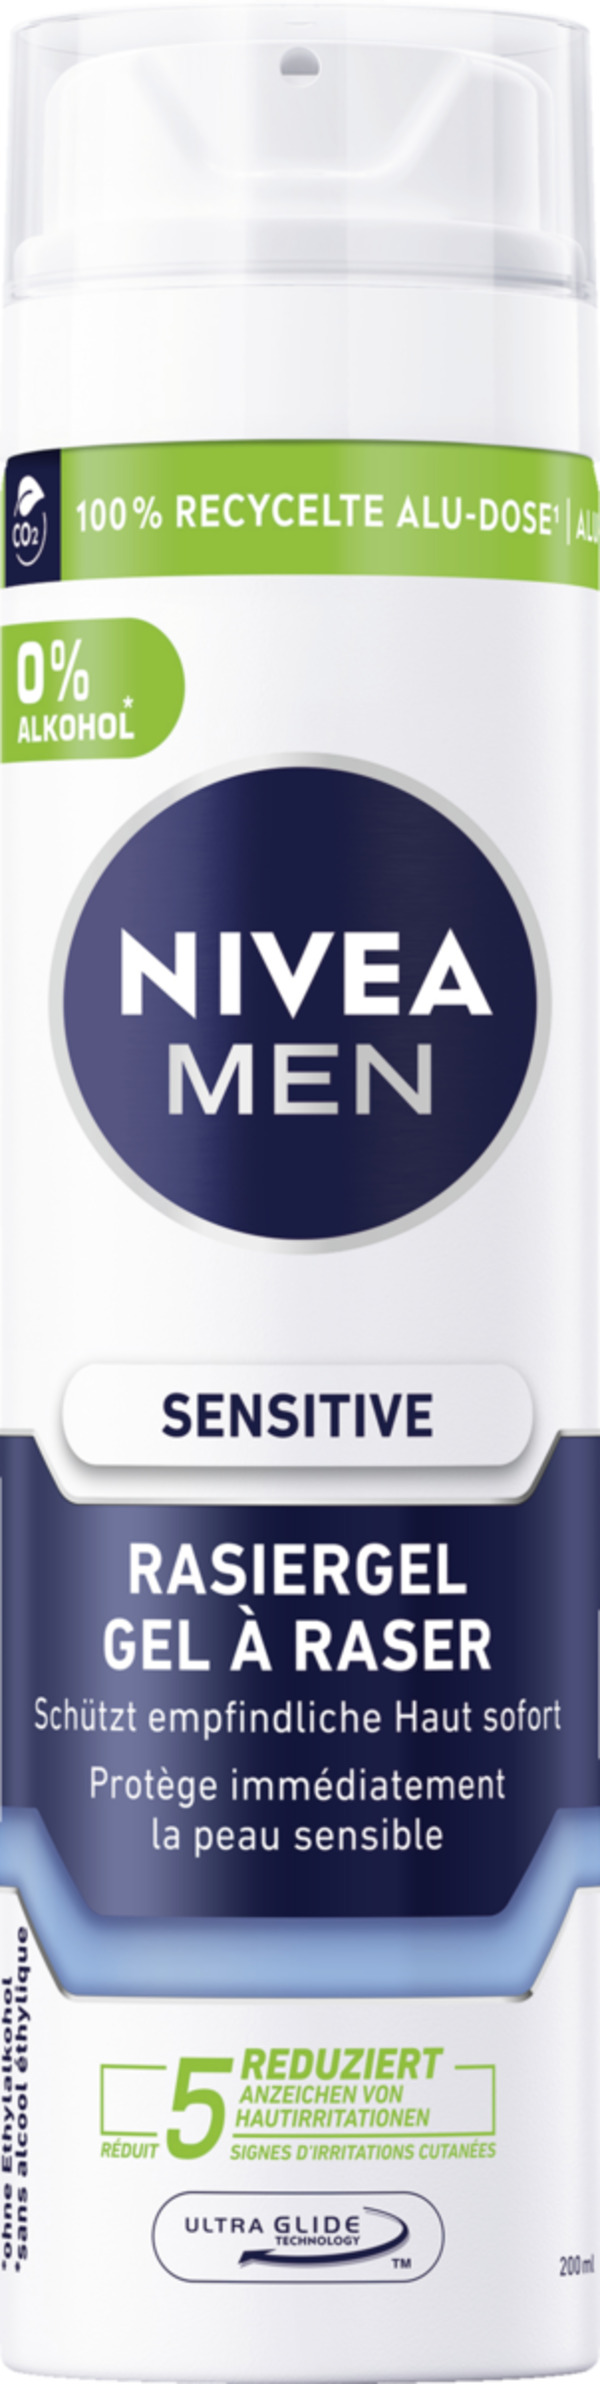 Bild 1 von NIVEA MEN Sensitive Rasiergel